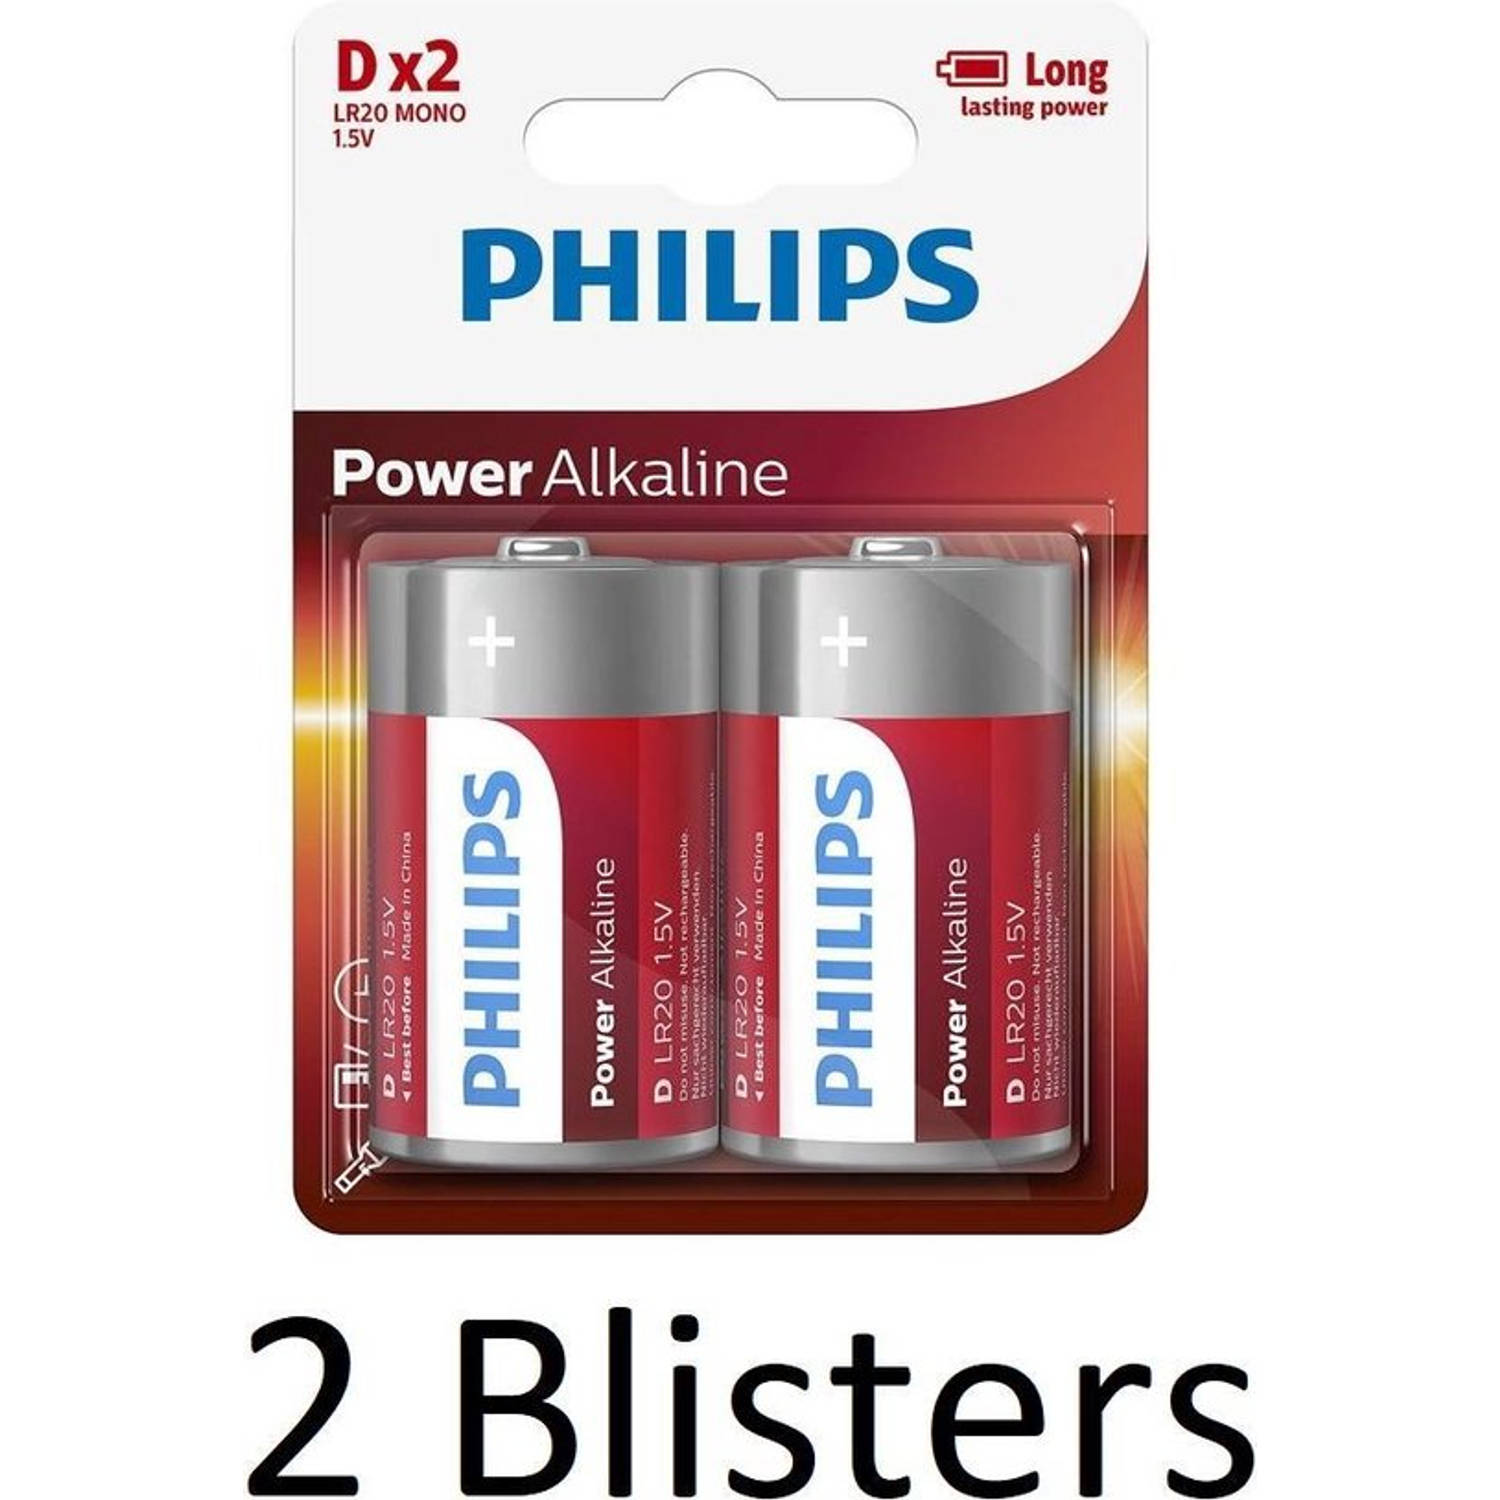 4 Stuks (2 Blisters a 2 st) Philips Power Alkaline D Batterijen